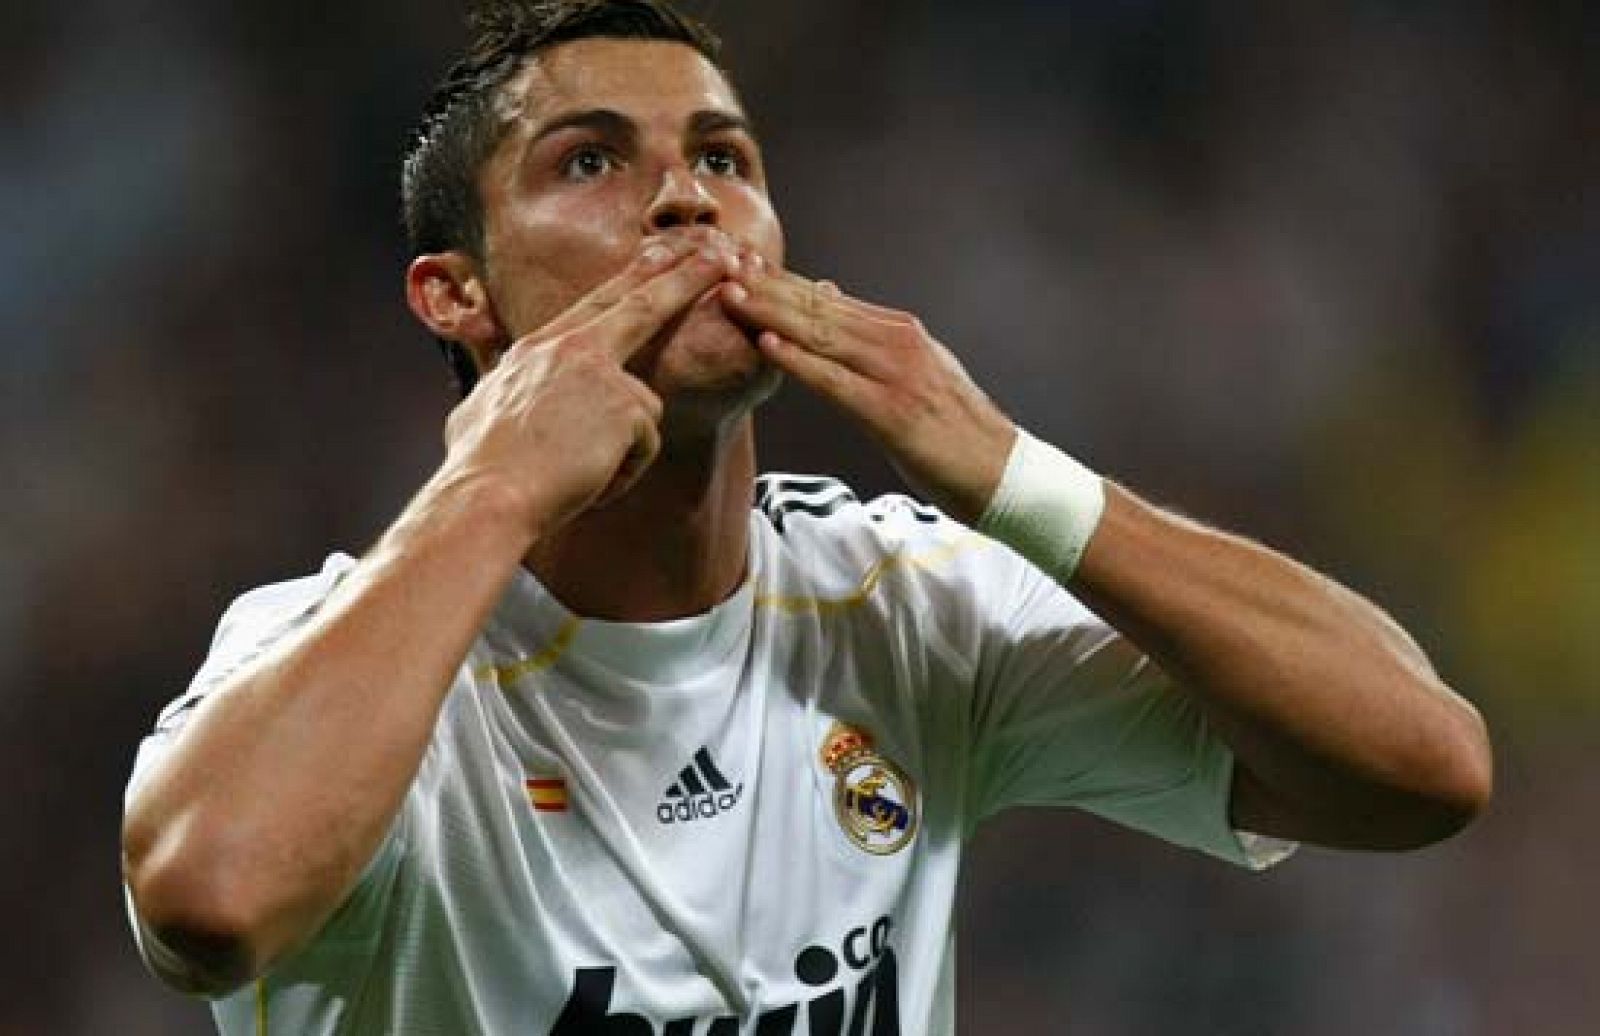 El Madrid derrota por 3-0 al Olympique de Marsella en un partido que destascó Cristiano Ronaldo en la segunda parte. El portugués marcó dos goles y Kaká anoto otro de penali.